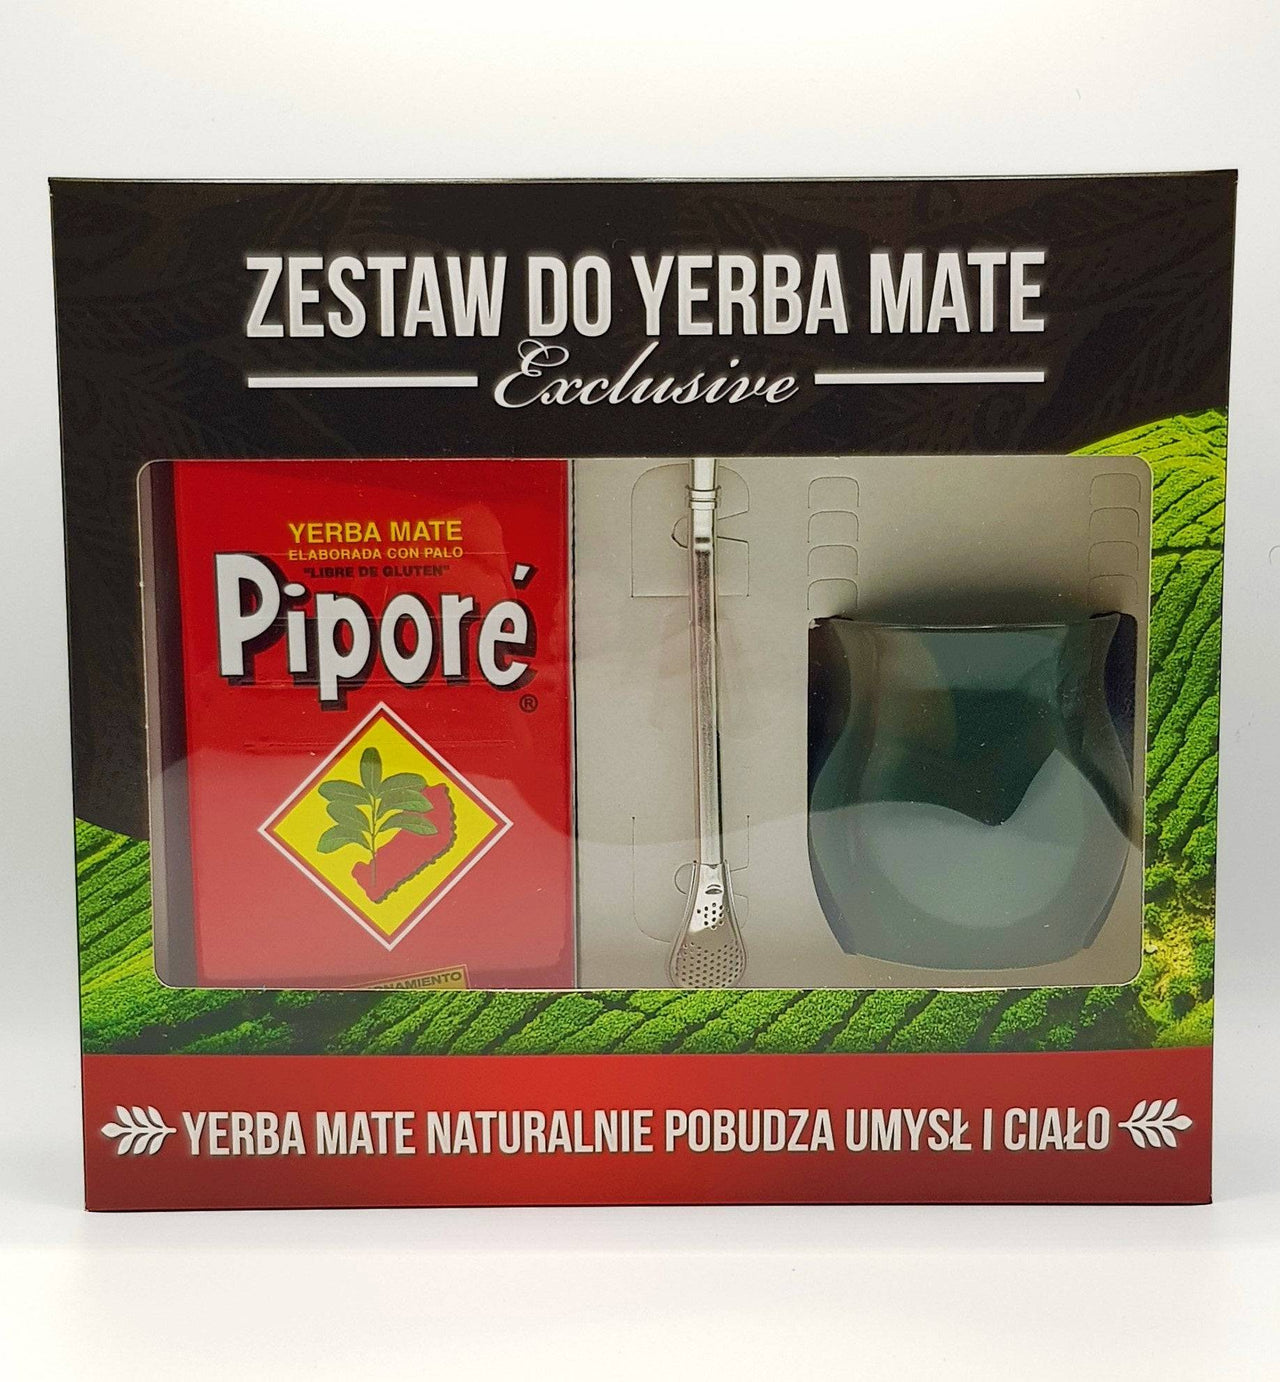 Zestaw Exclusive Yerba 500g + bombilla los. + naczynko los. - Intenson.pl